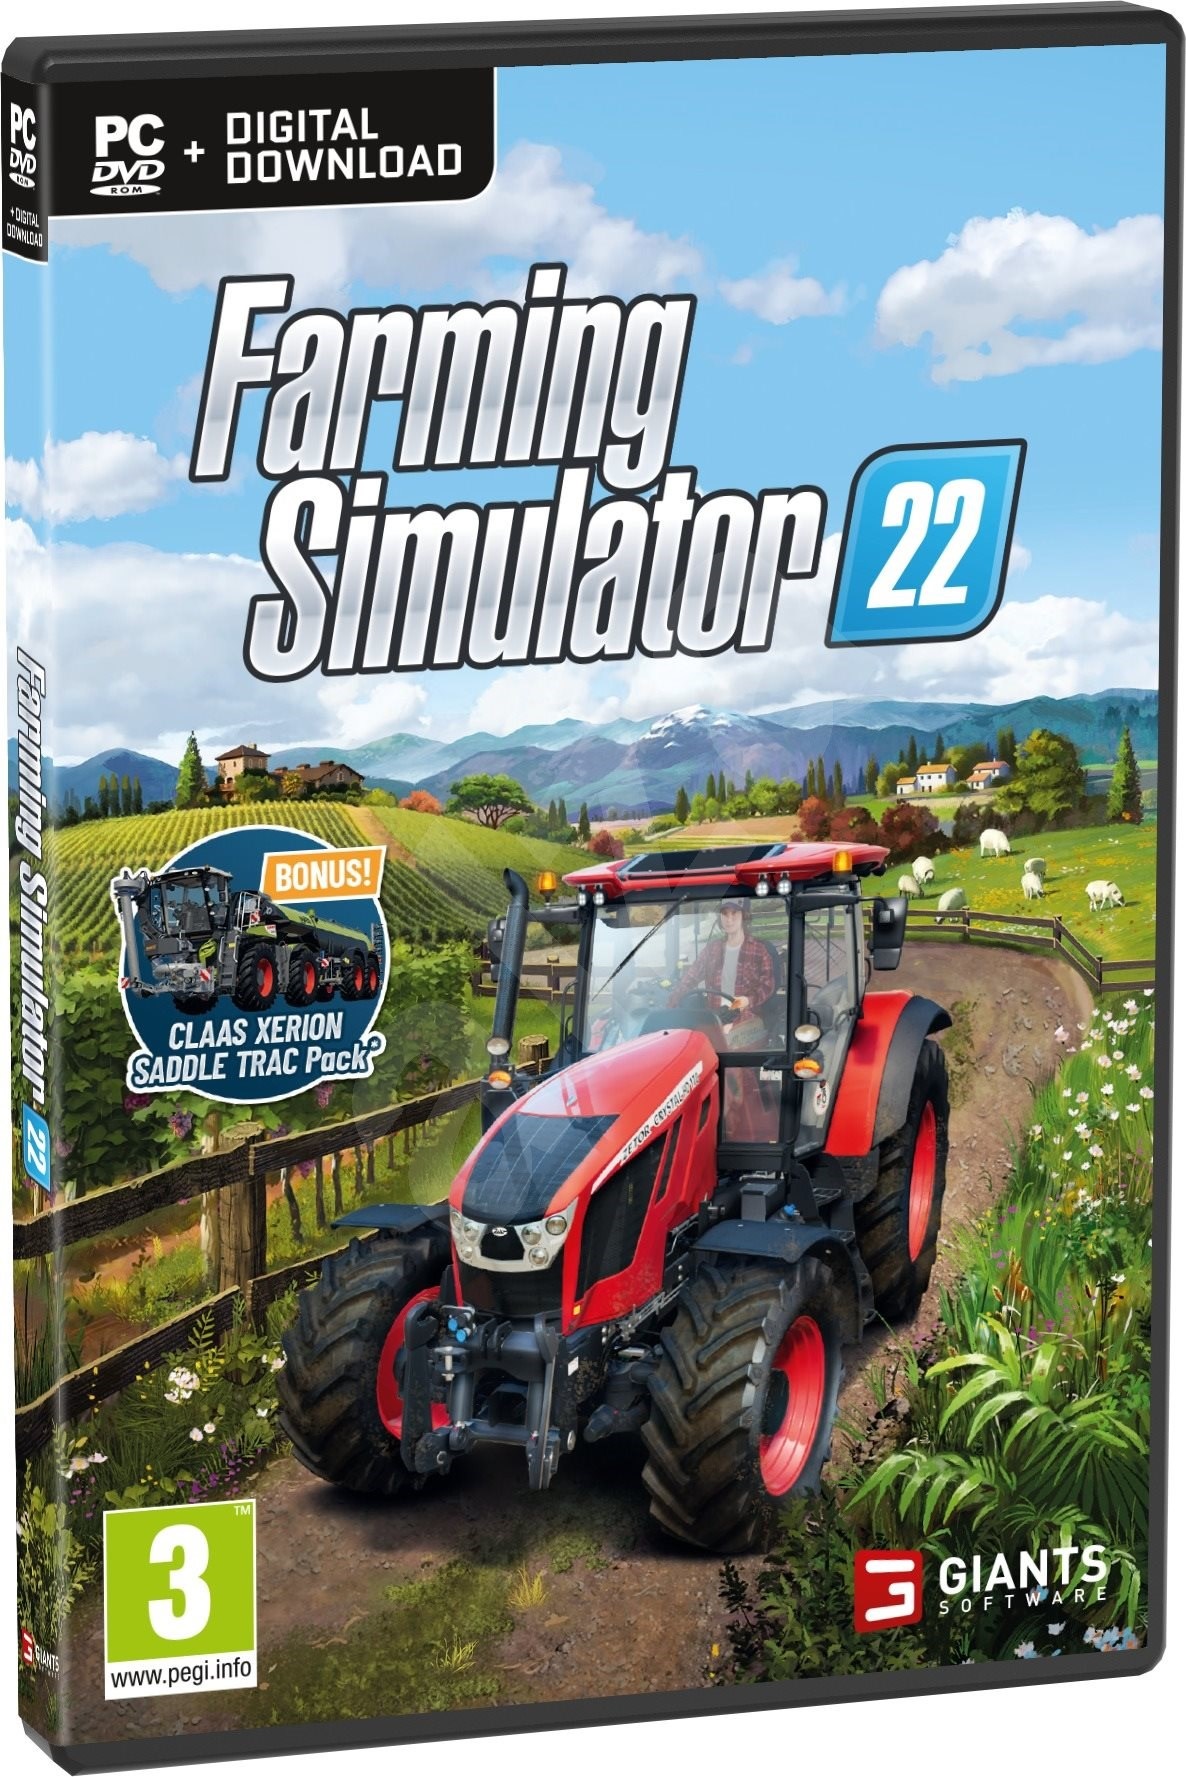 donor rand meten ZETOR back in the Farming Simulator game - ZETOR TRACTORS a.s.